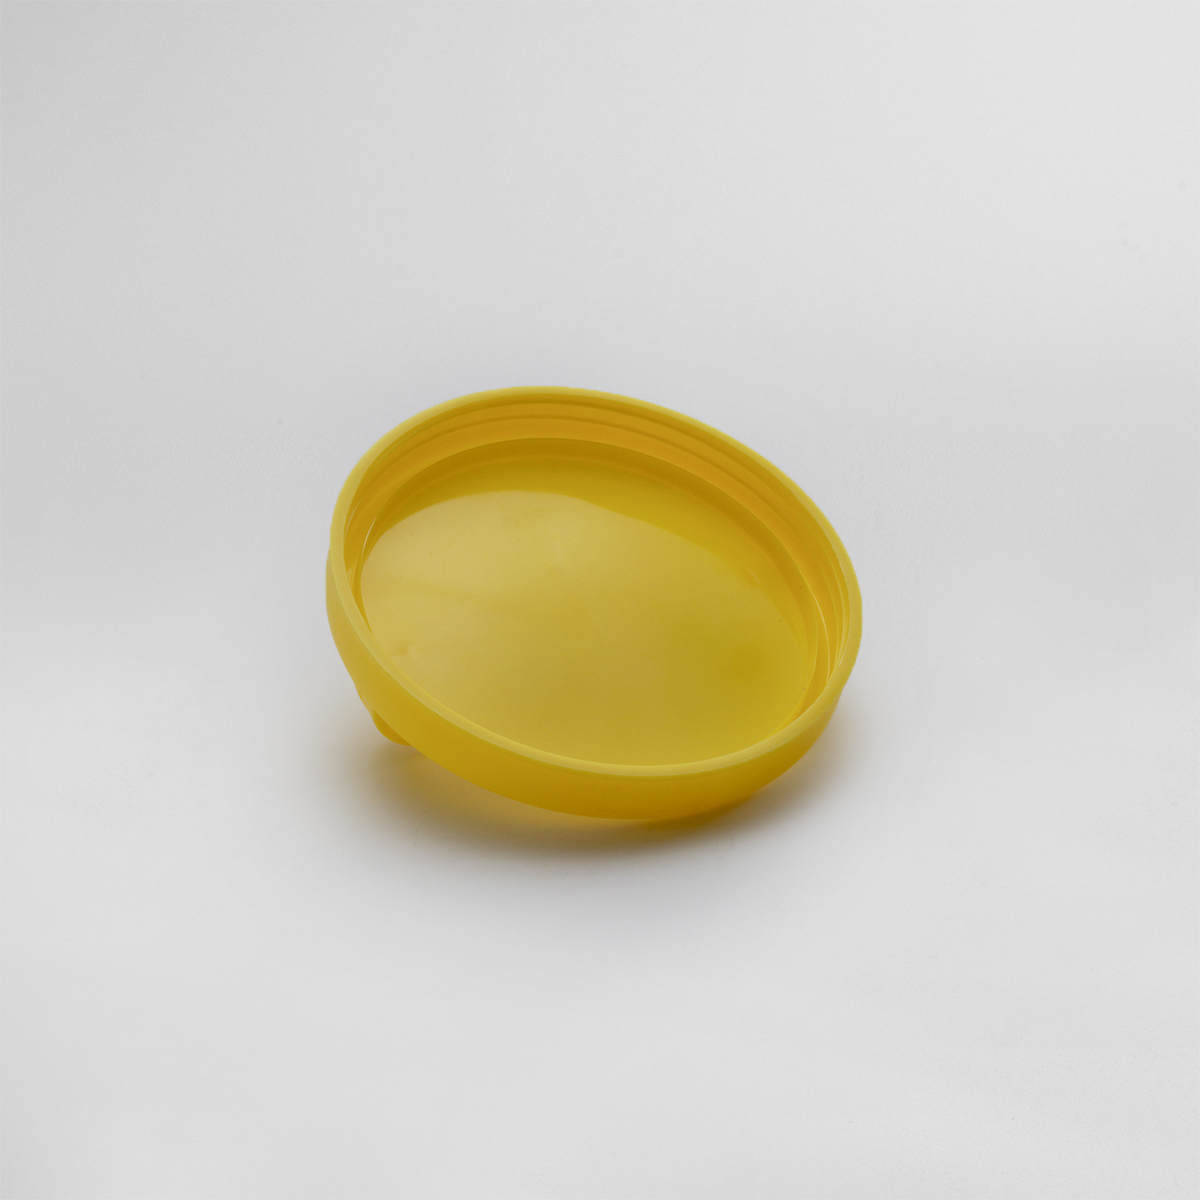 Jar lid (10 pieces)